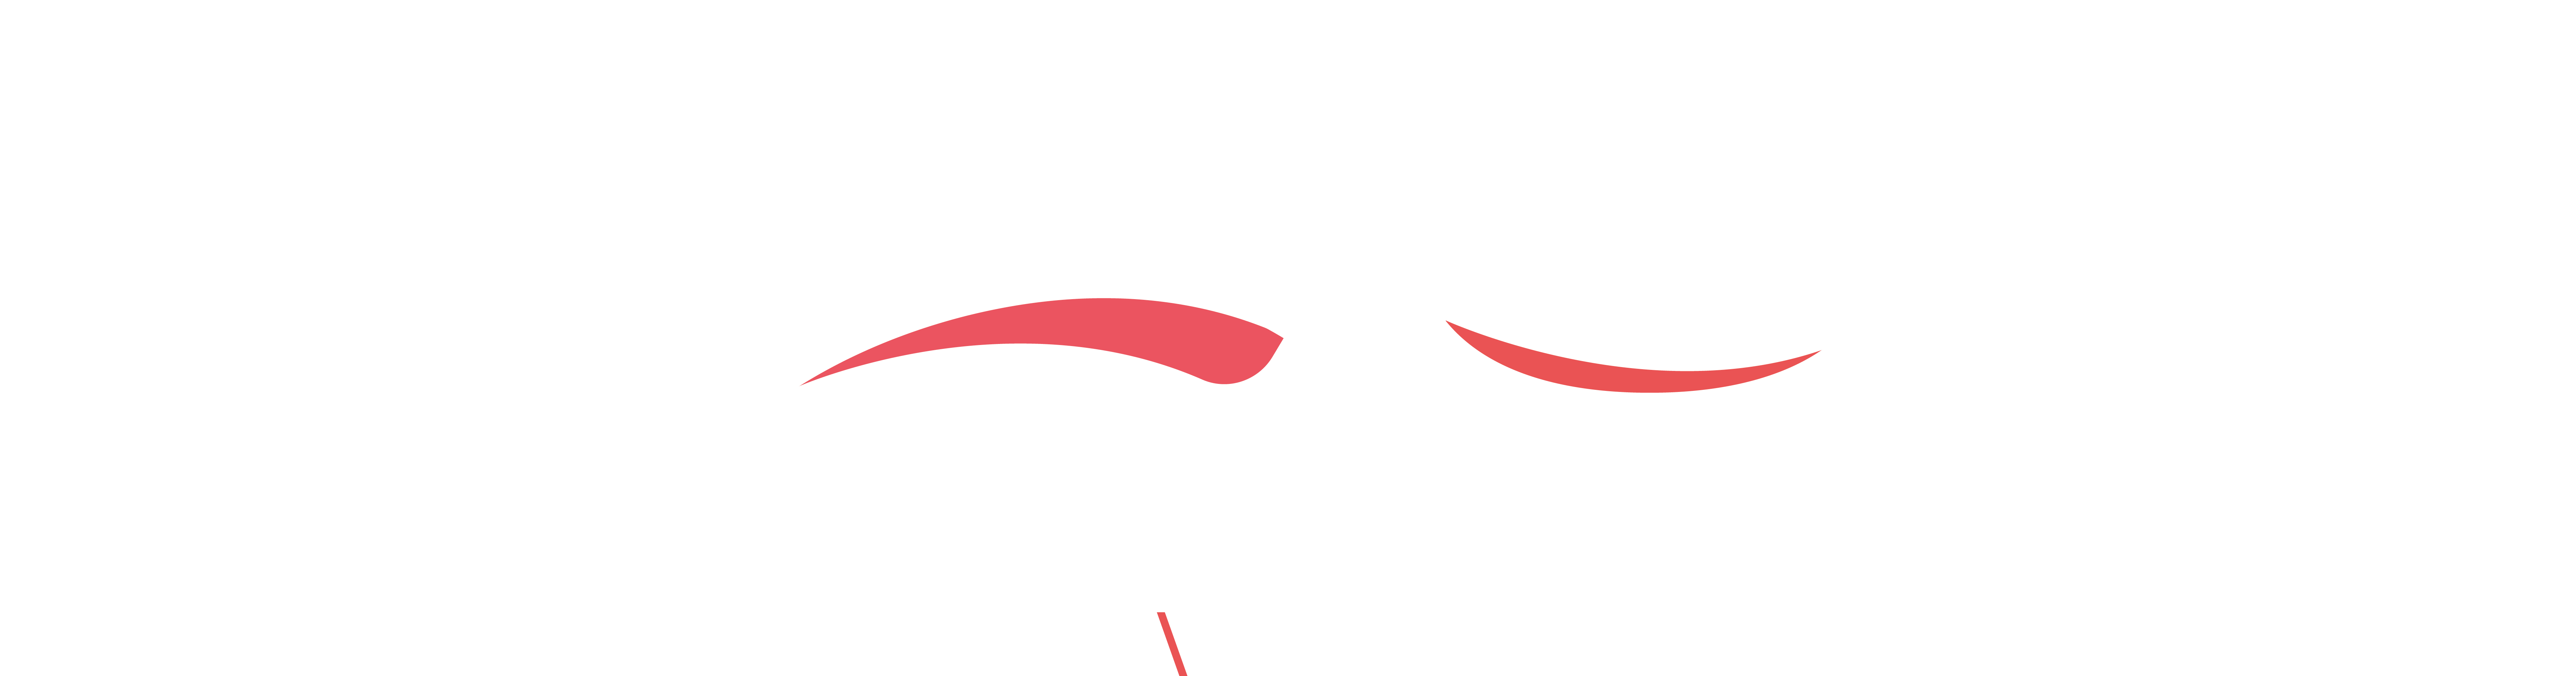 AZUR Cession / Acquisition